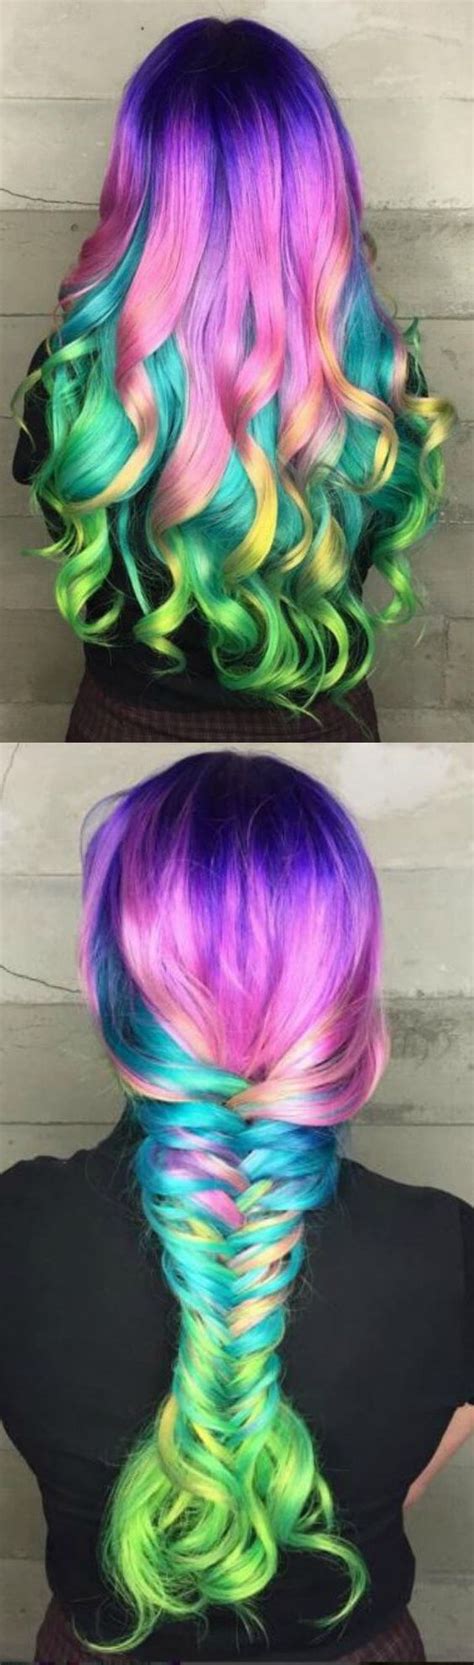 Los peinados de colores para chicas atrevidas PASO A PASO ...